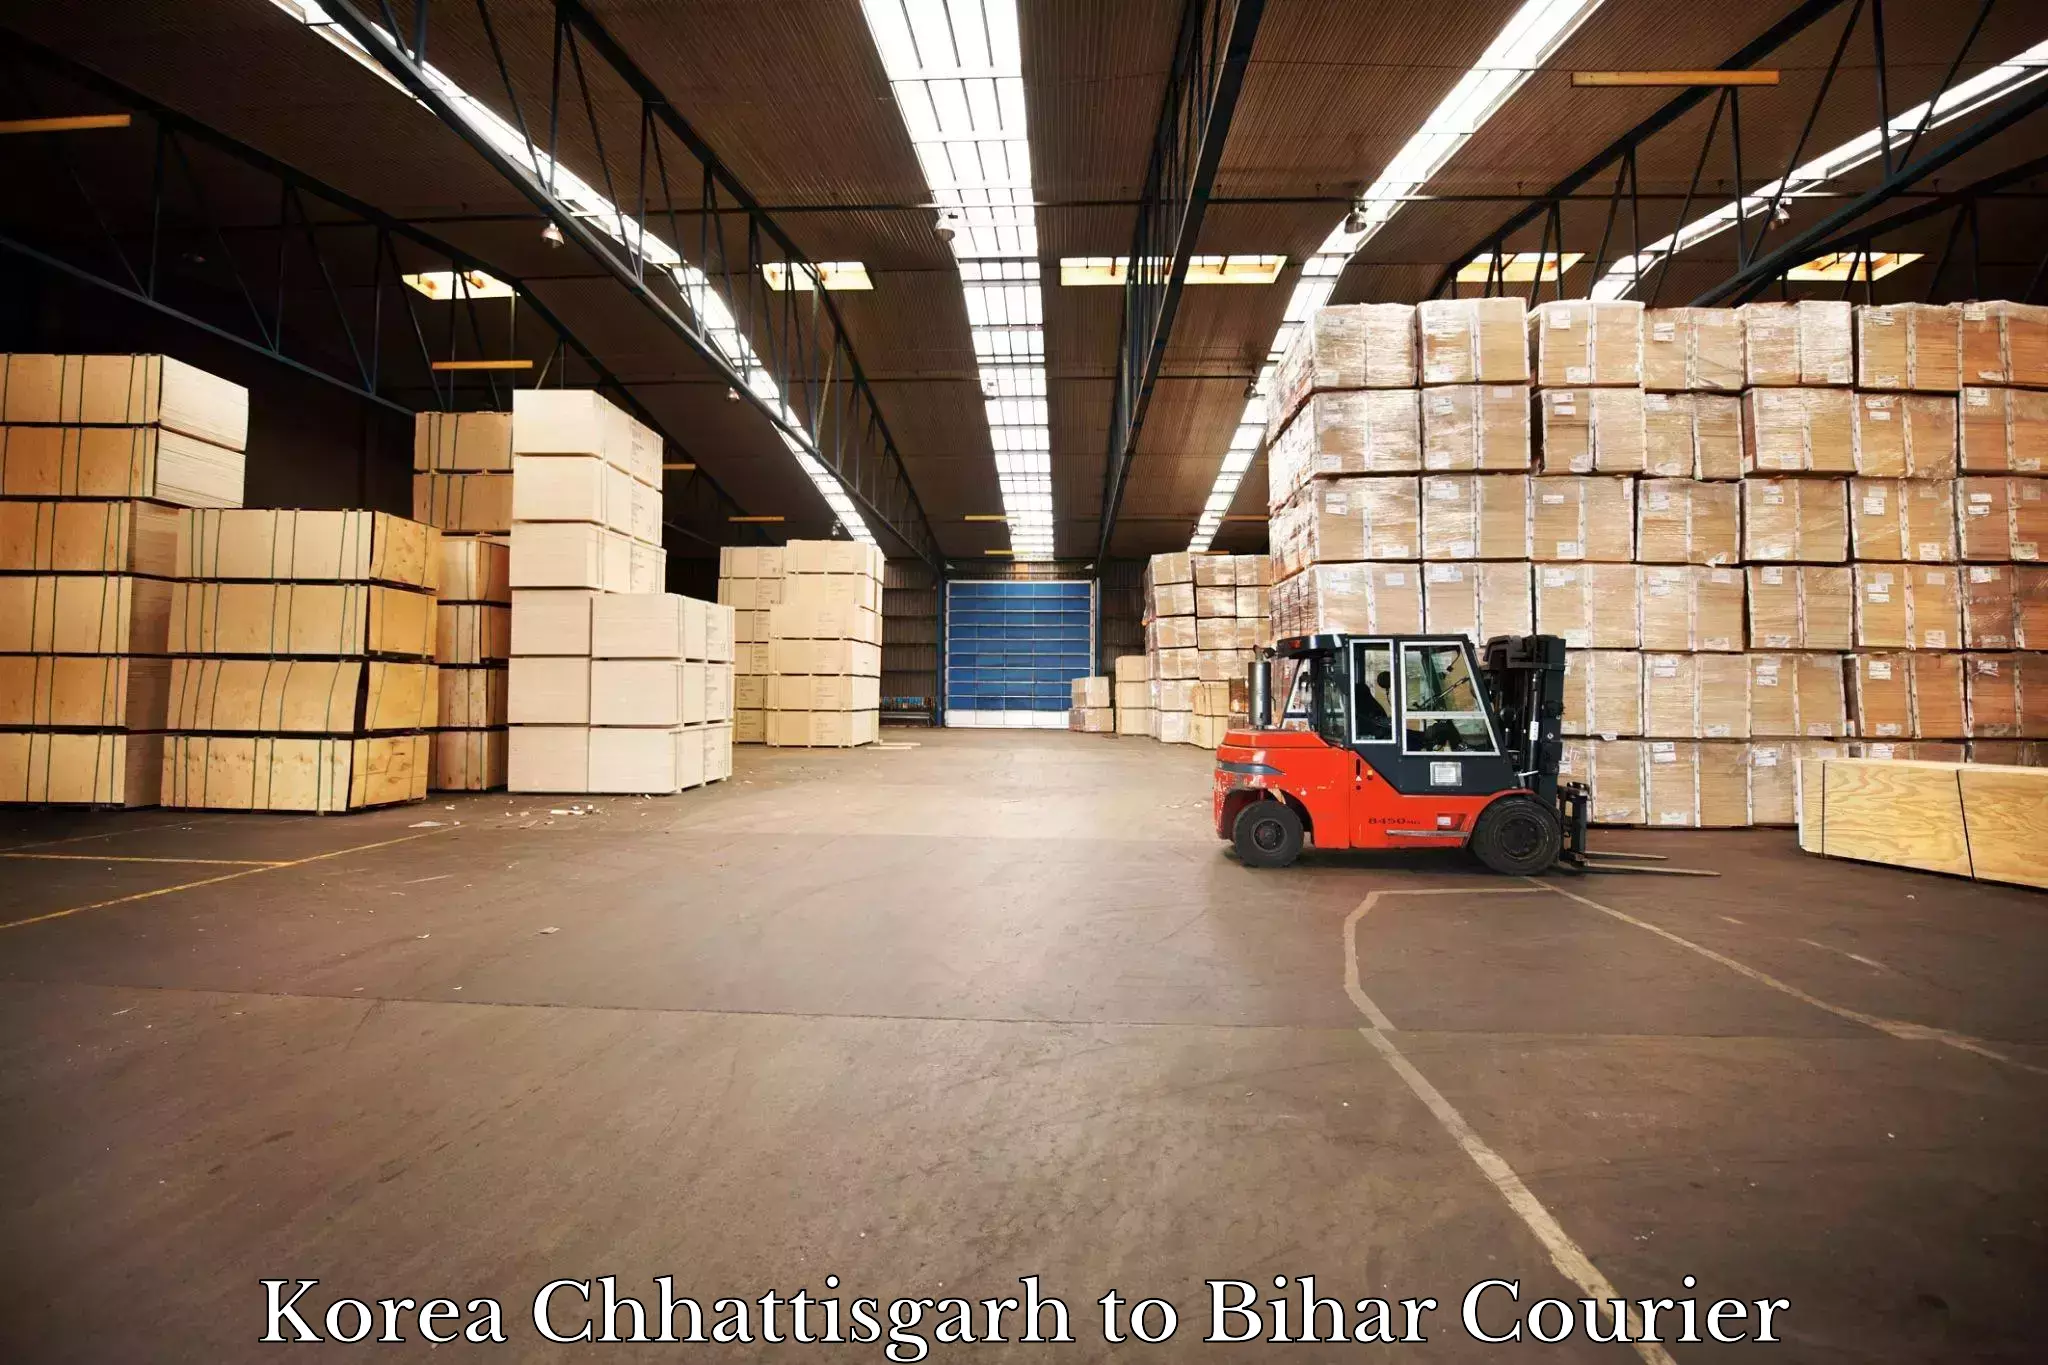 Courier service comparison in Korea Chhattisgarh to Kochas